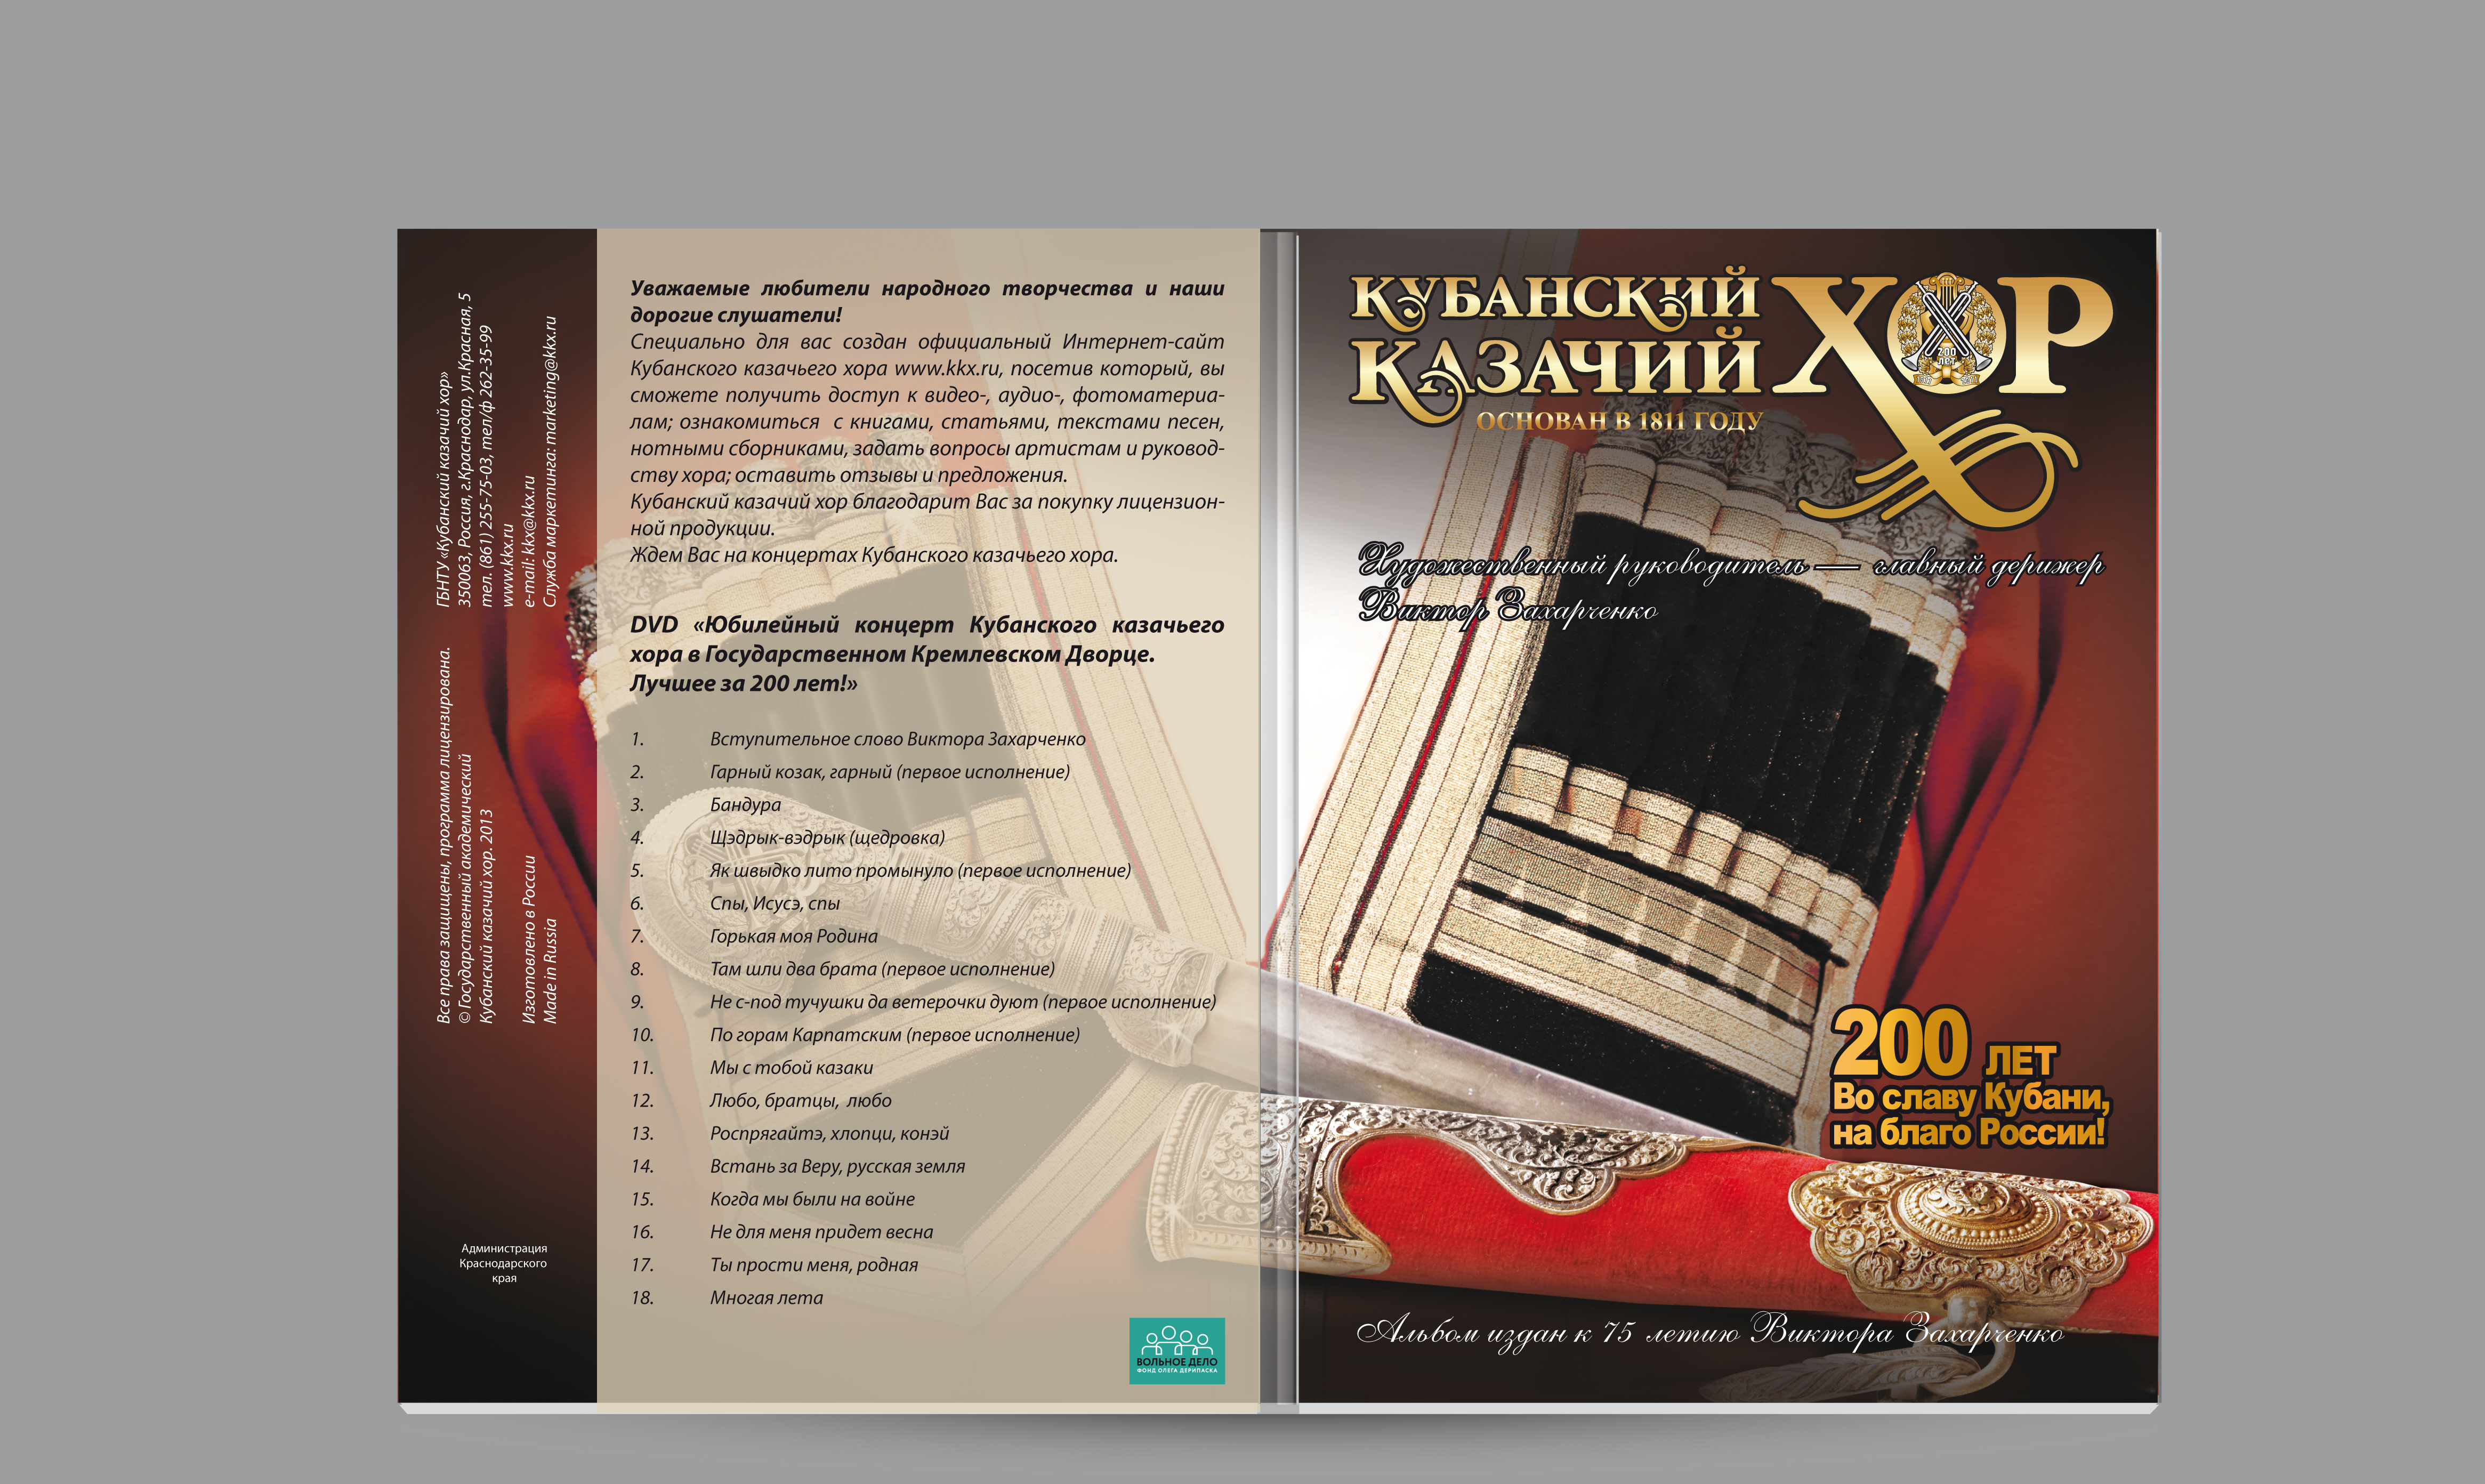 Видео концерт ККХ в Государственном кремлевском дворце "Лучшее за 200 лет"